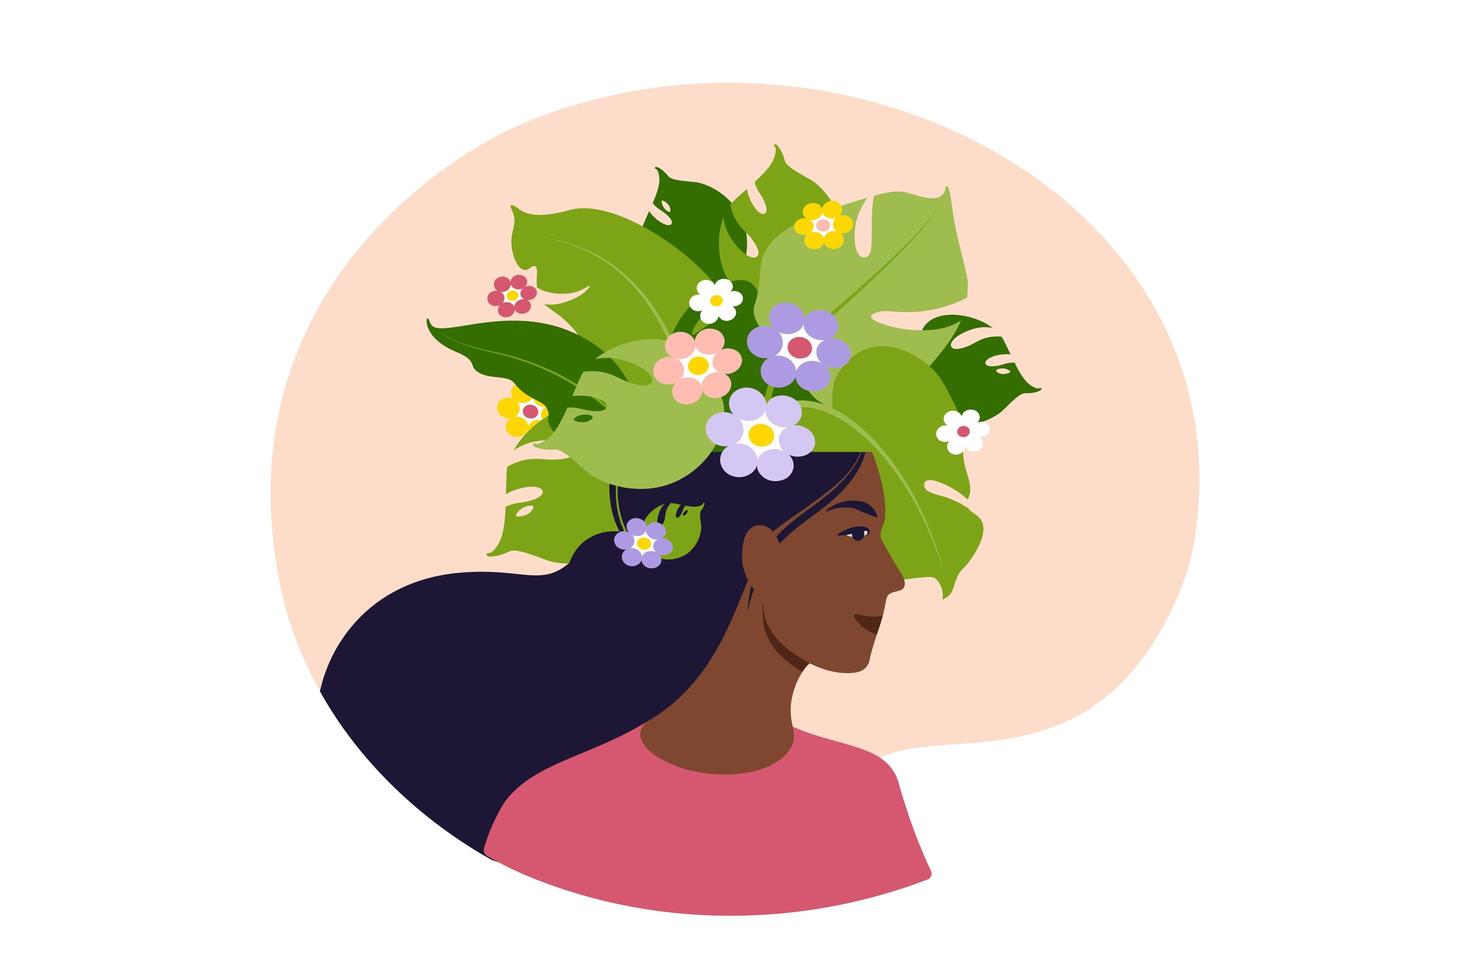 santé mentale, bonheur, concept d'harmonie. tête de femme africaine heureuse avec des fleurs à l'intérieur. pleine conscience, pensée positive, idée de soins personnels. illustration vectorielle. plat. vecteur